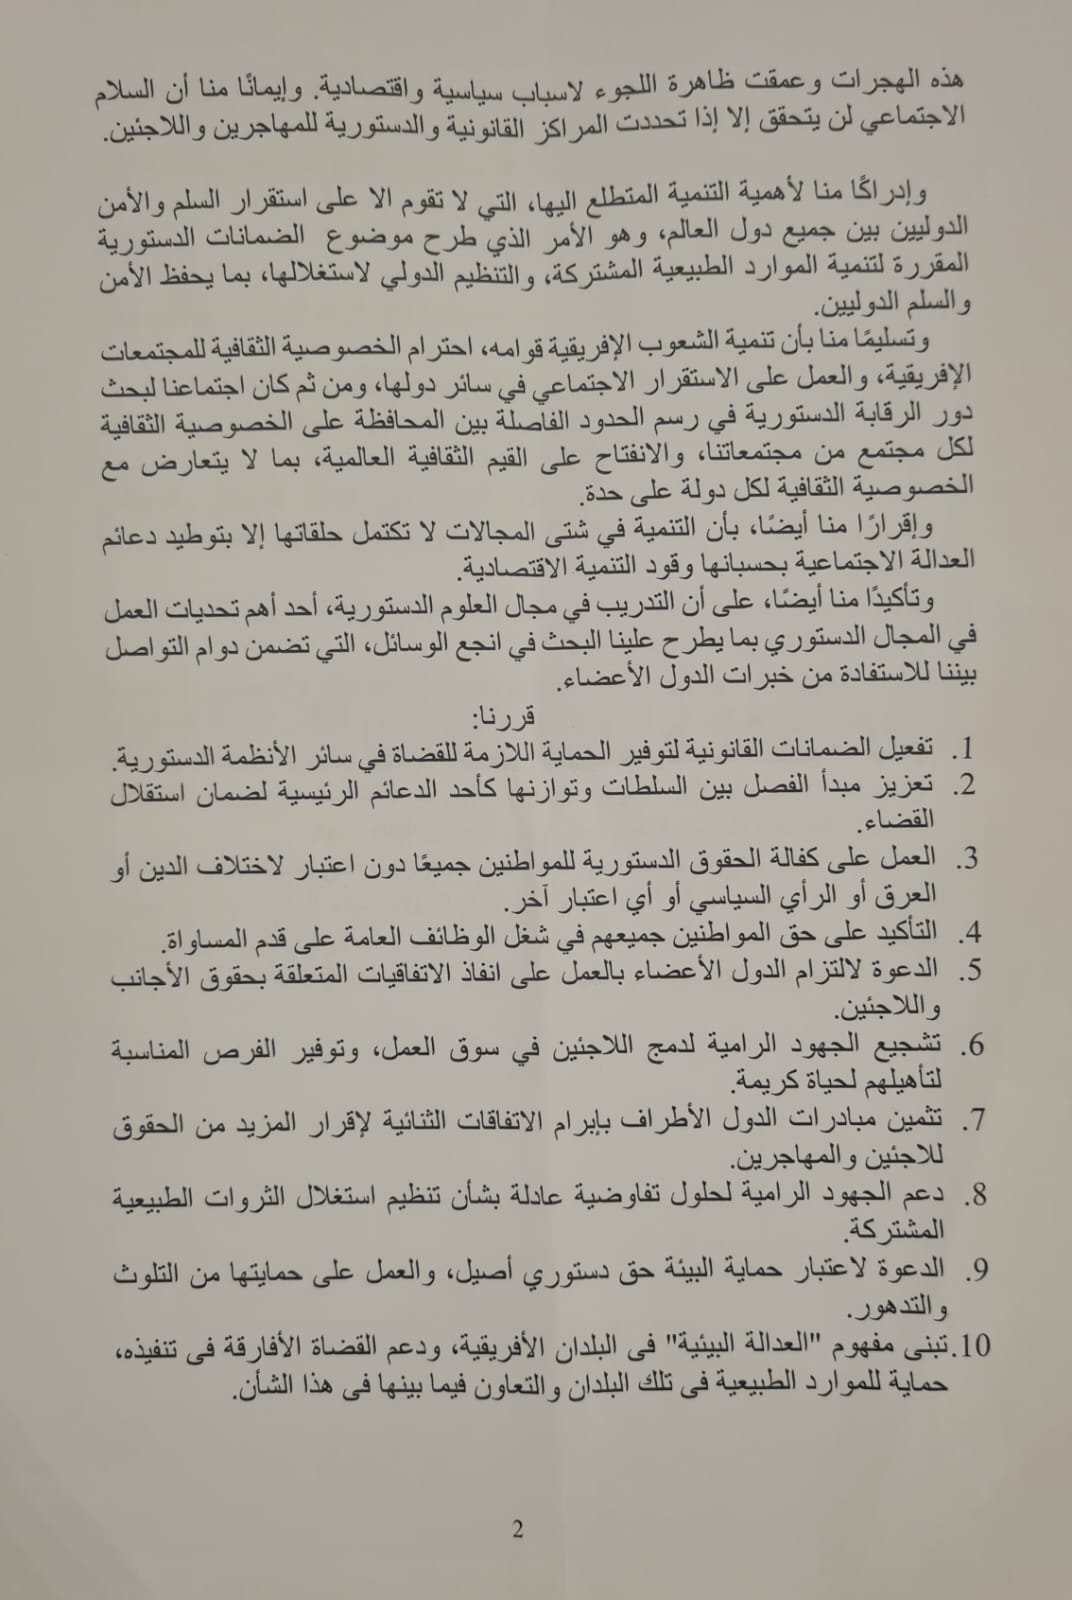 نتائج اجتماع القاهرة السادس لرؤساء المحاكم الدستورية والمحاكم العليا 2